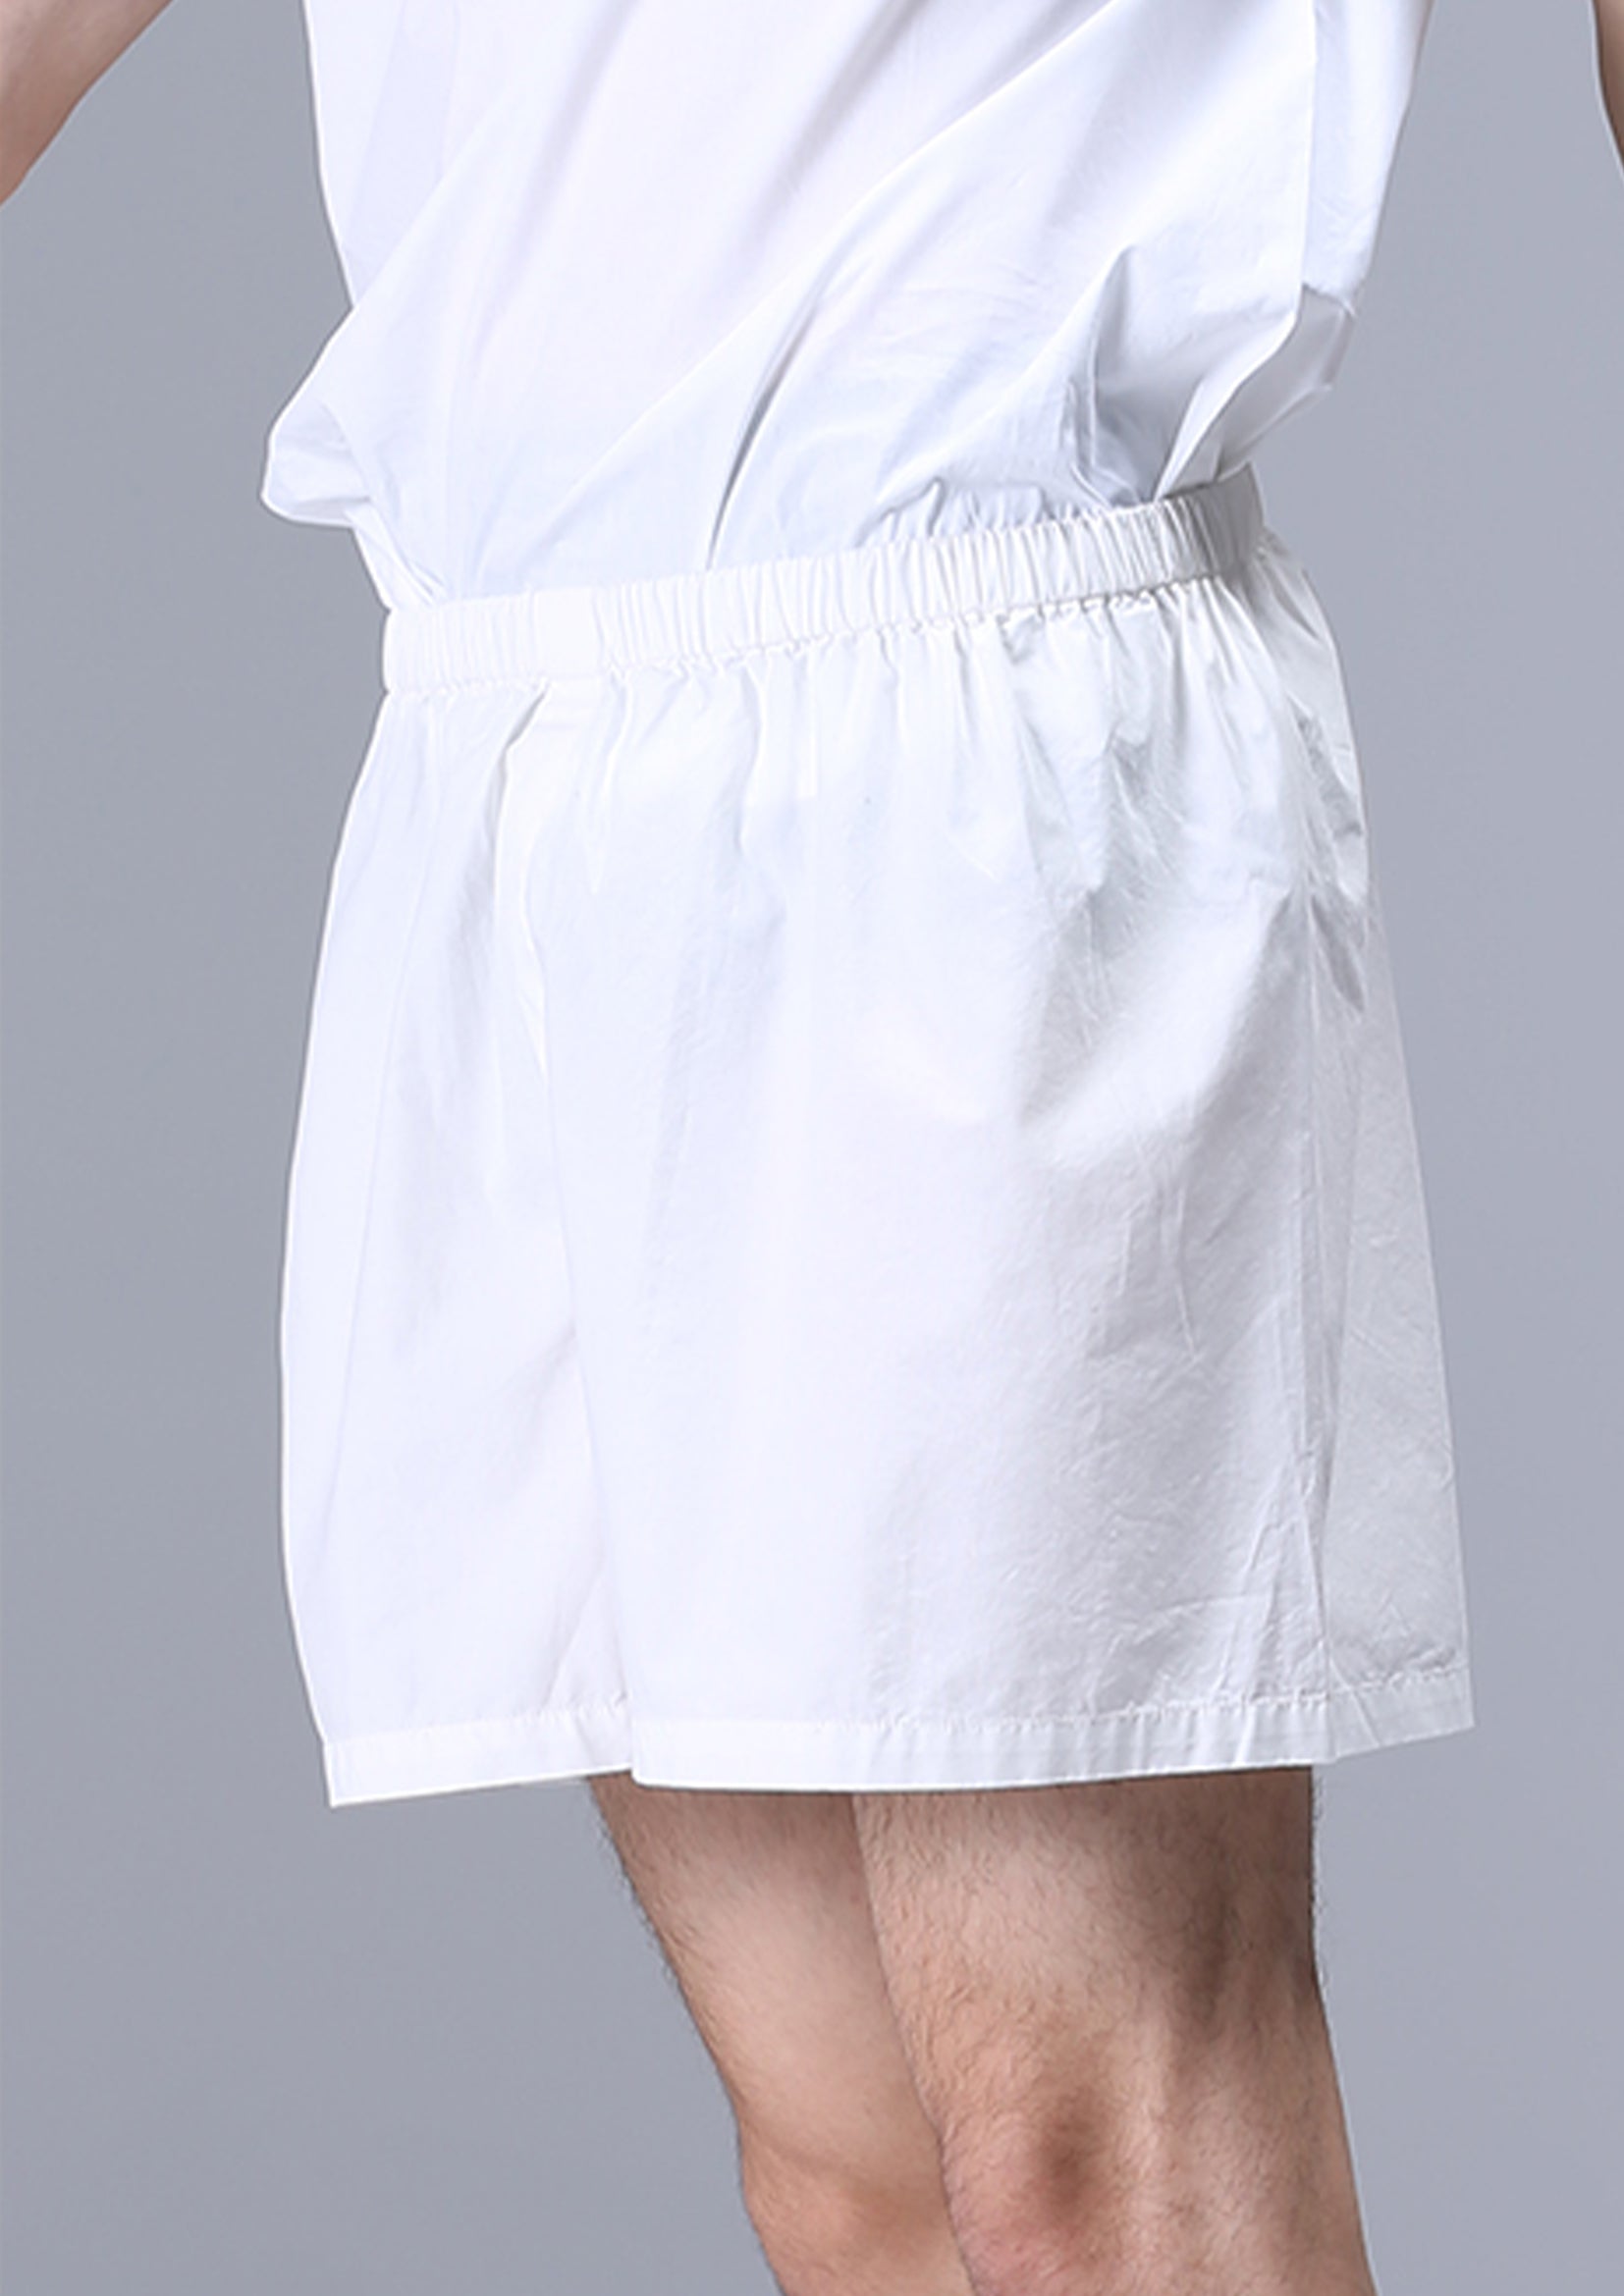 Unisex boxer shorts underwear in white